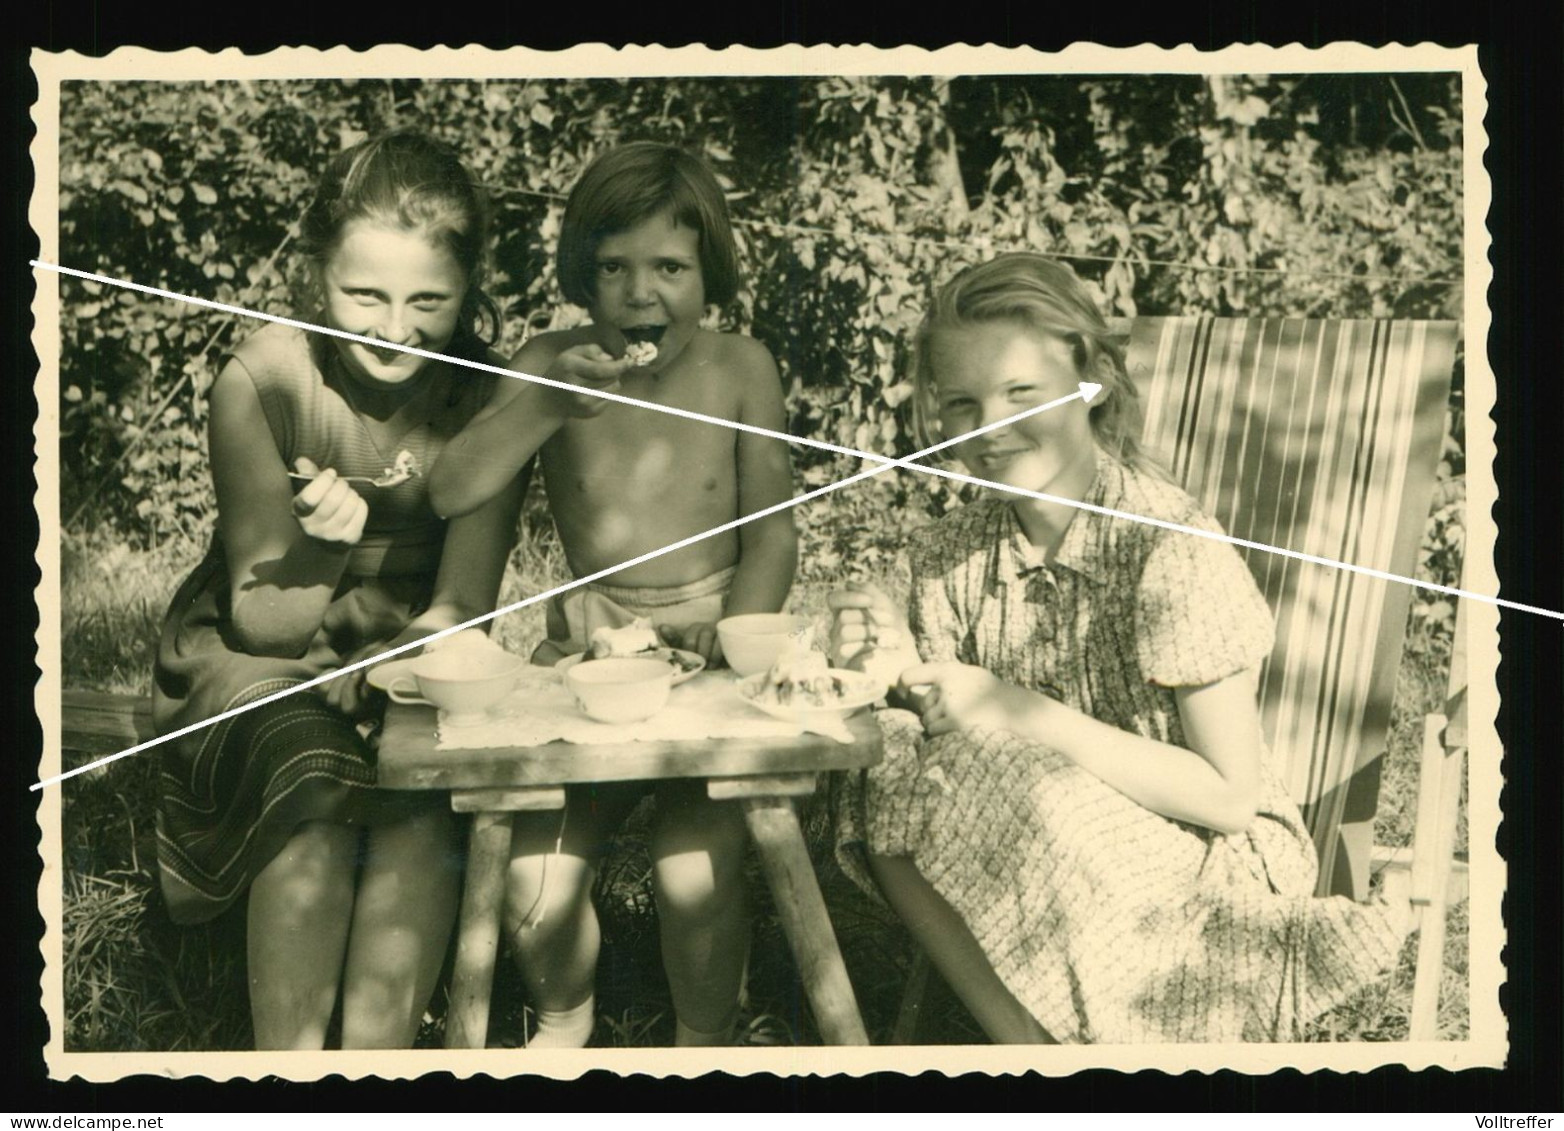 Orig. Foto 30er Jahre Hübsche Mädchen Zusammen, Picknick, Sweet Young Girls Schoolgirls Beach Fashion Garden Eating - Personnes Anonymes